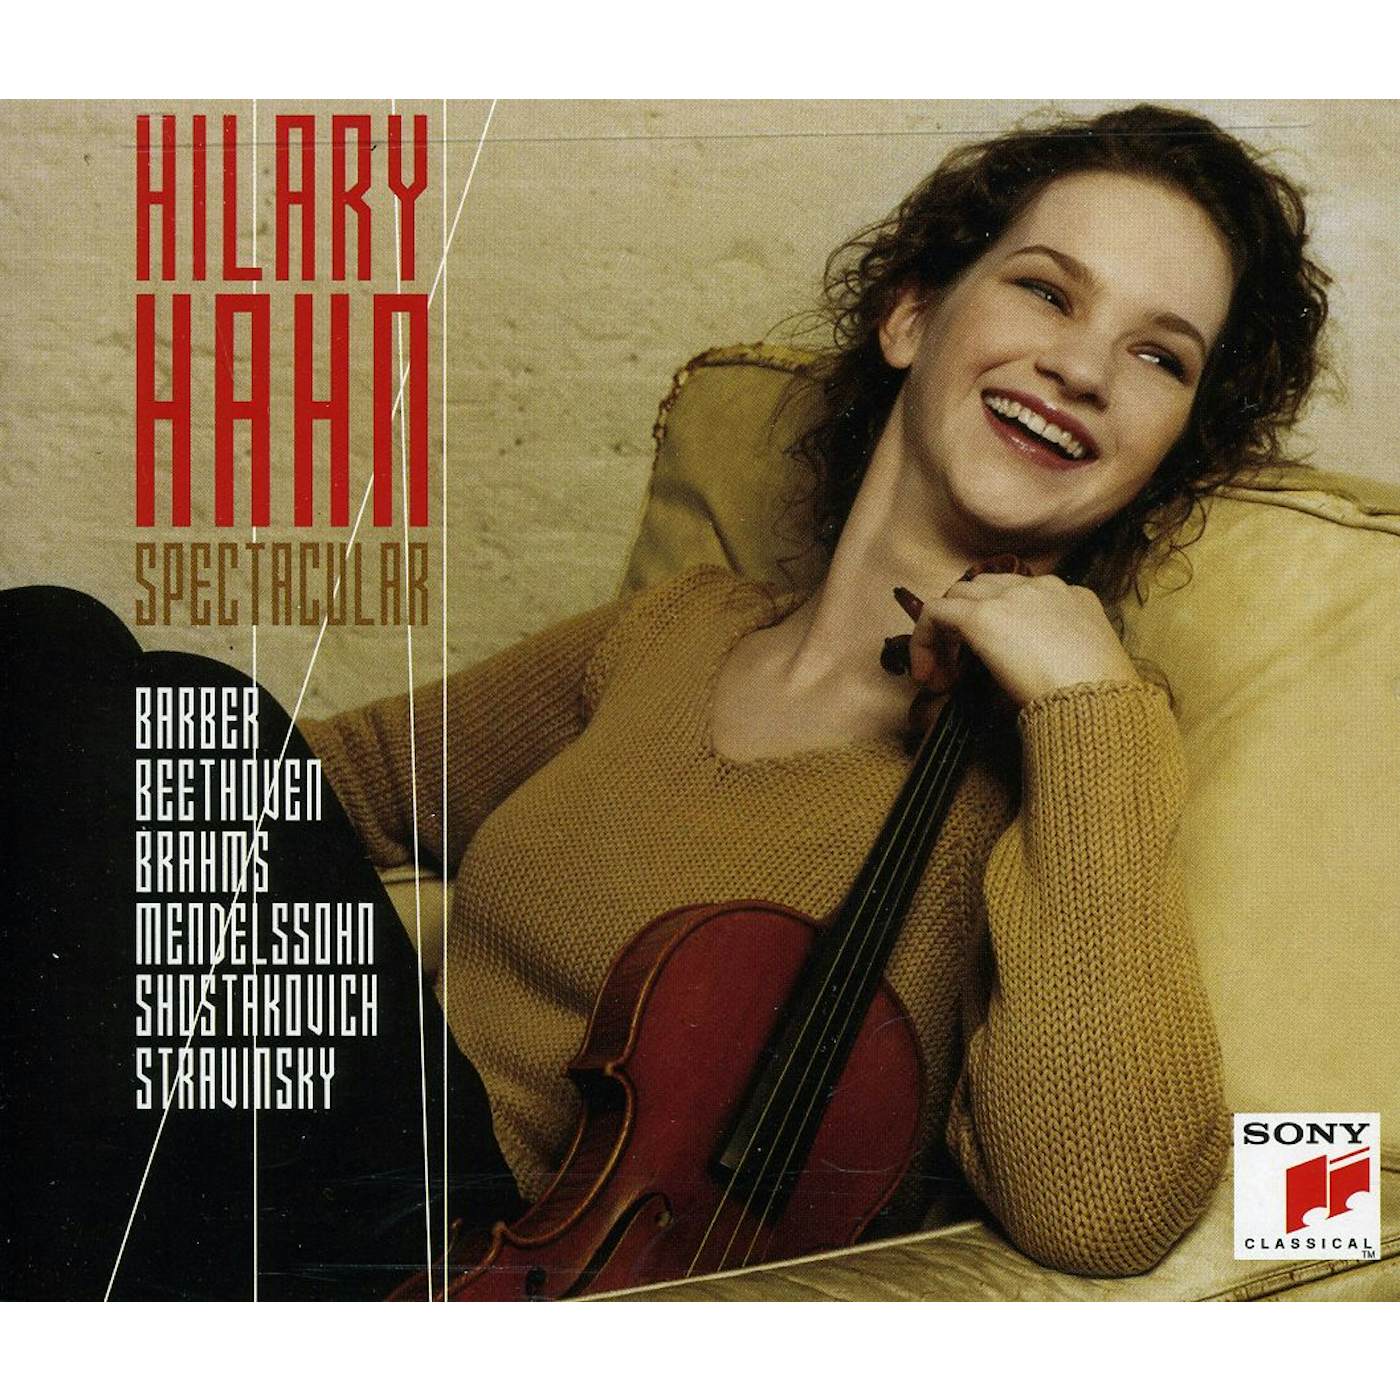 HILARY HAHN SPECTACULAR CD